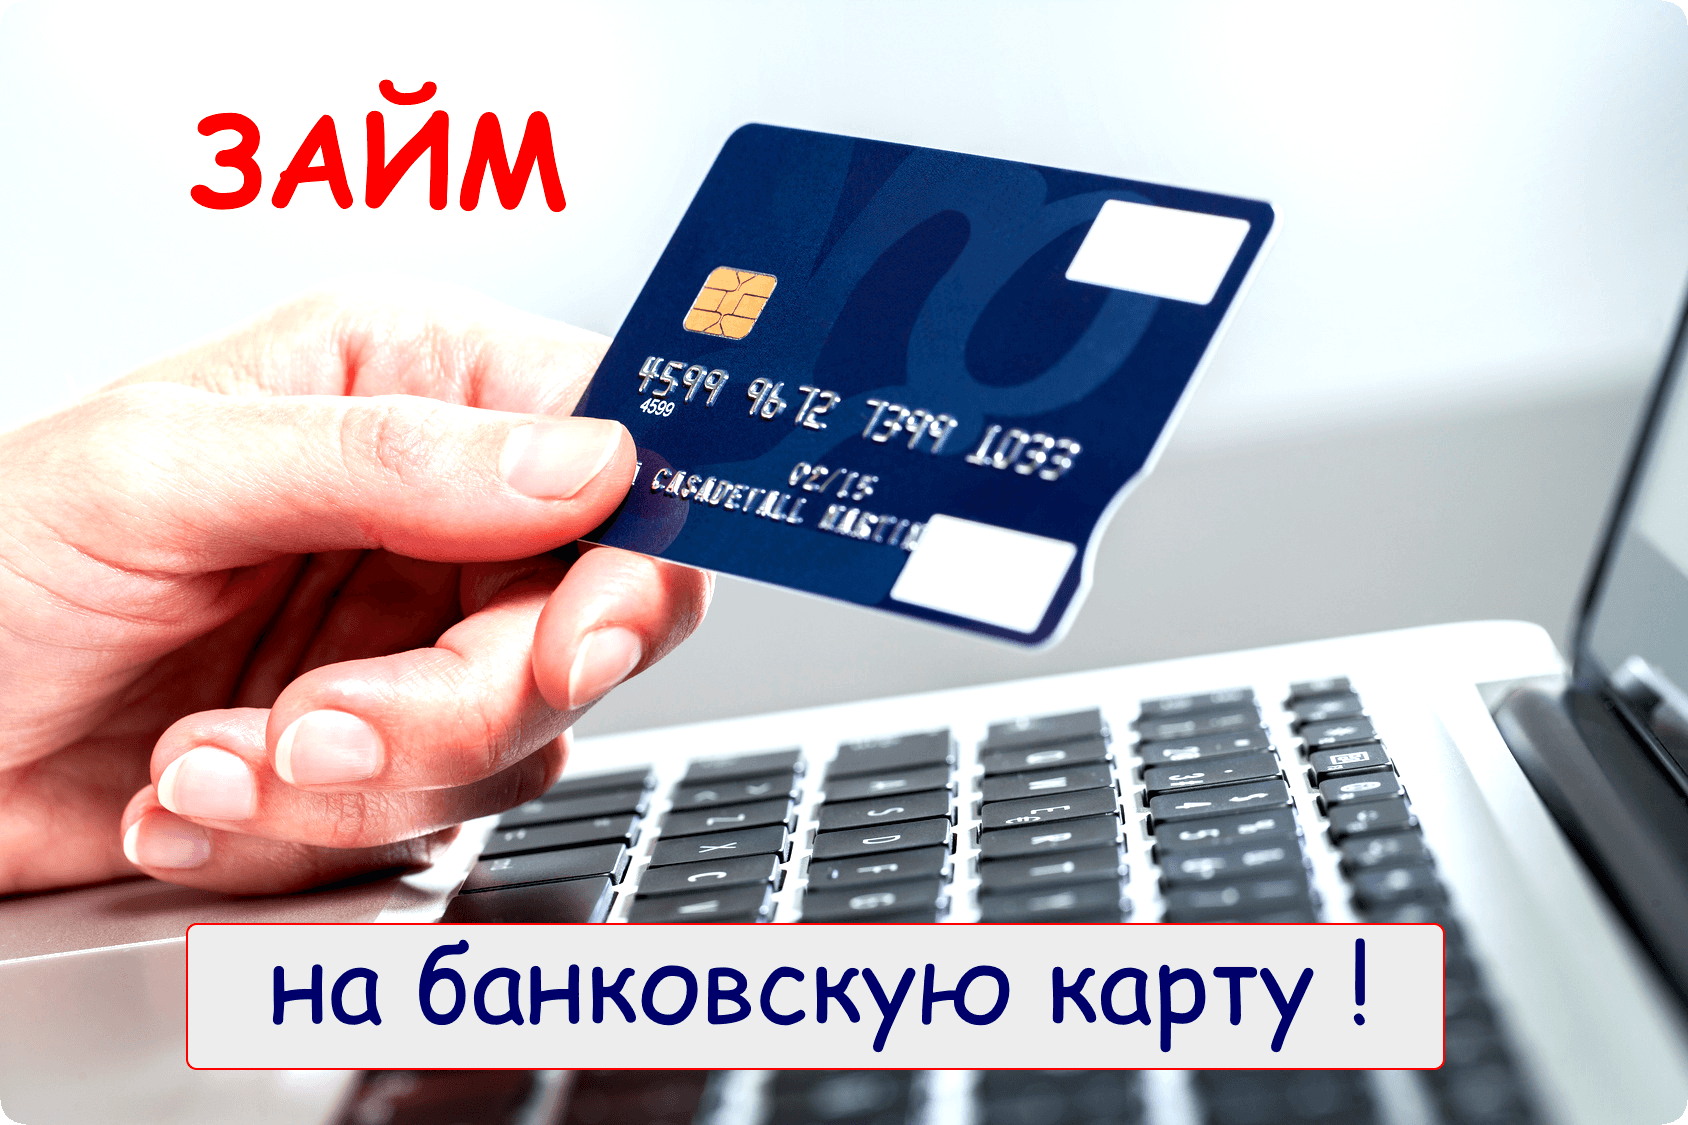 Взять кредит онлайн бесплатно на карту сбербанка сбербанк онлайн взять кредит онлайн отзывы